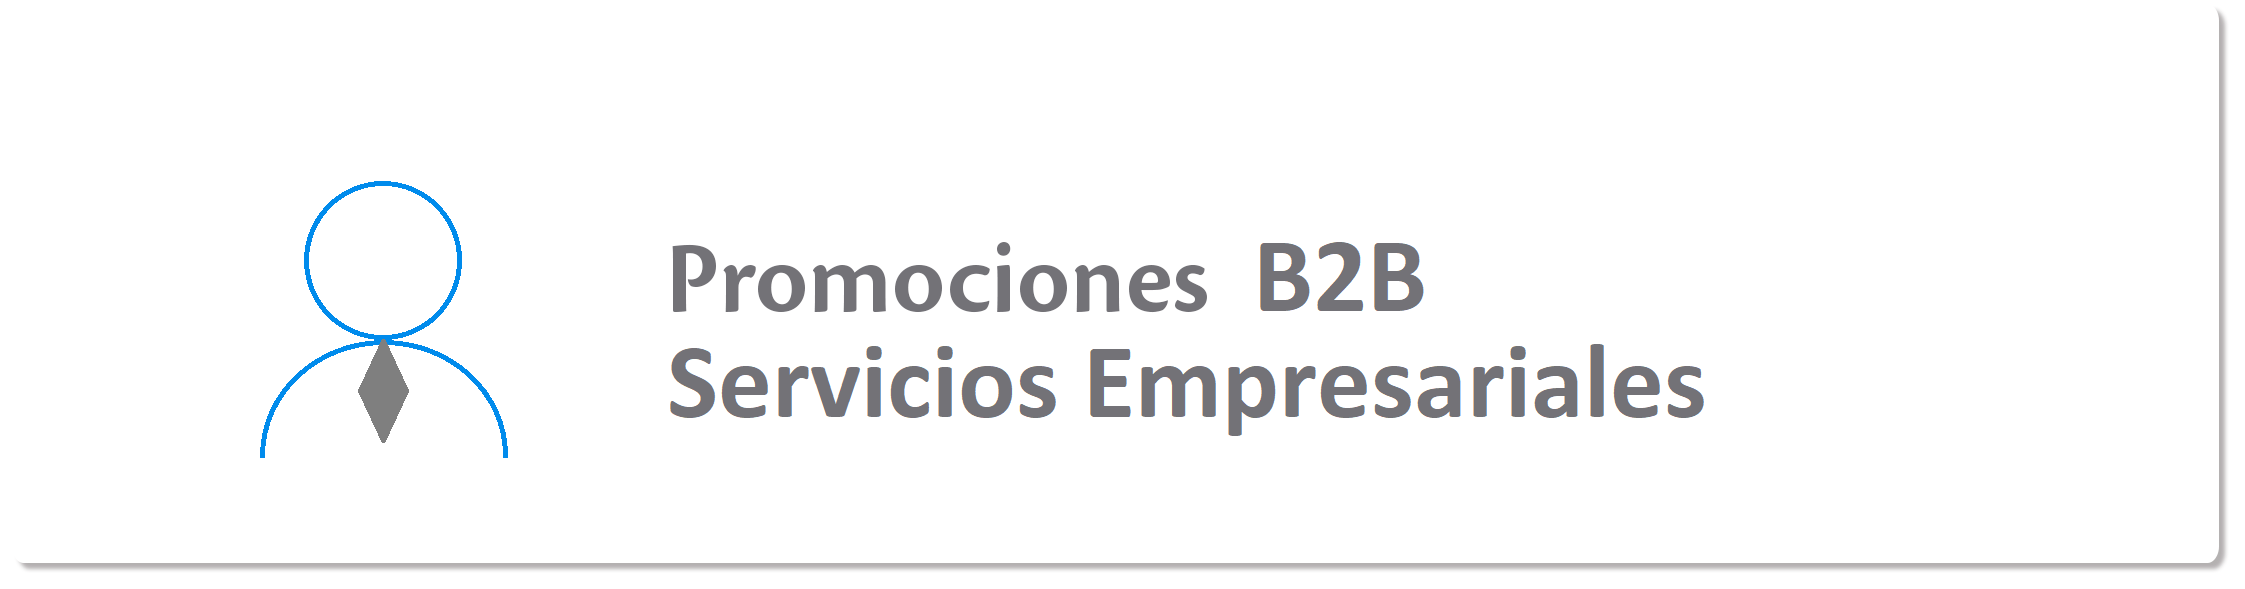 aw-promocion_b2b_servicios_empresariales.png